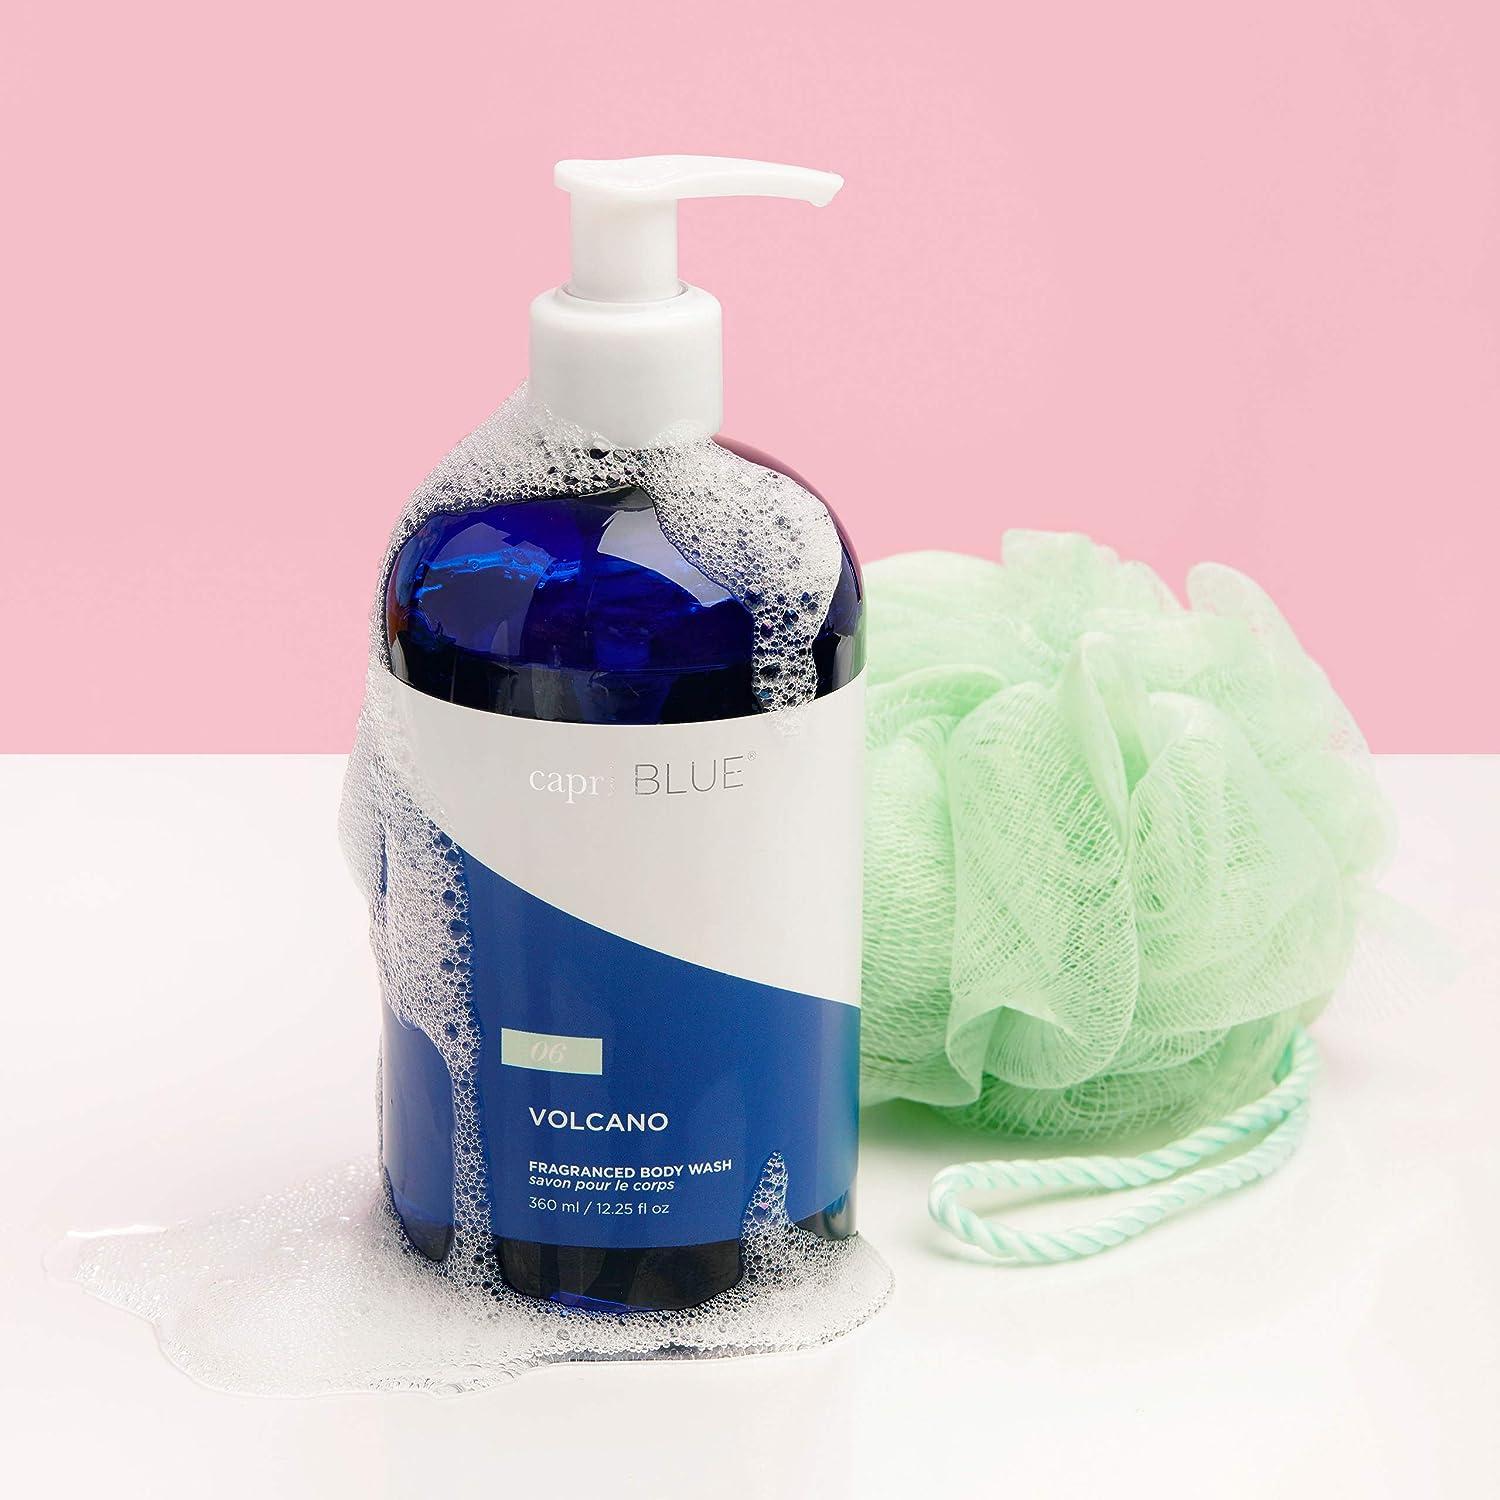 Capri Blue Volcano Body Wash - Citrus Scented Liquid Body Soap